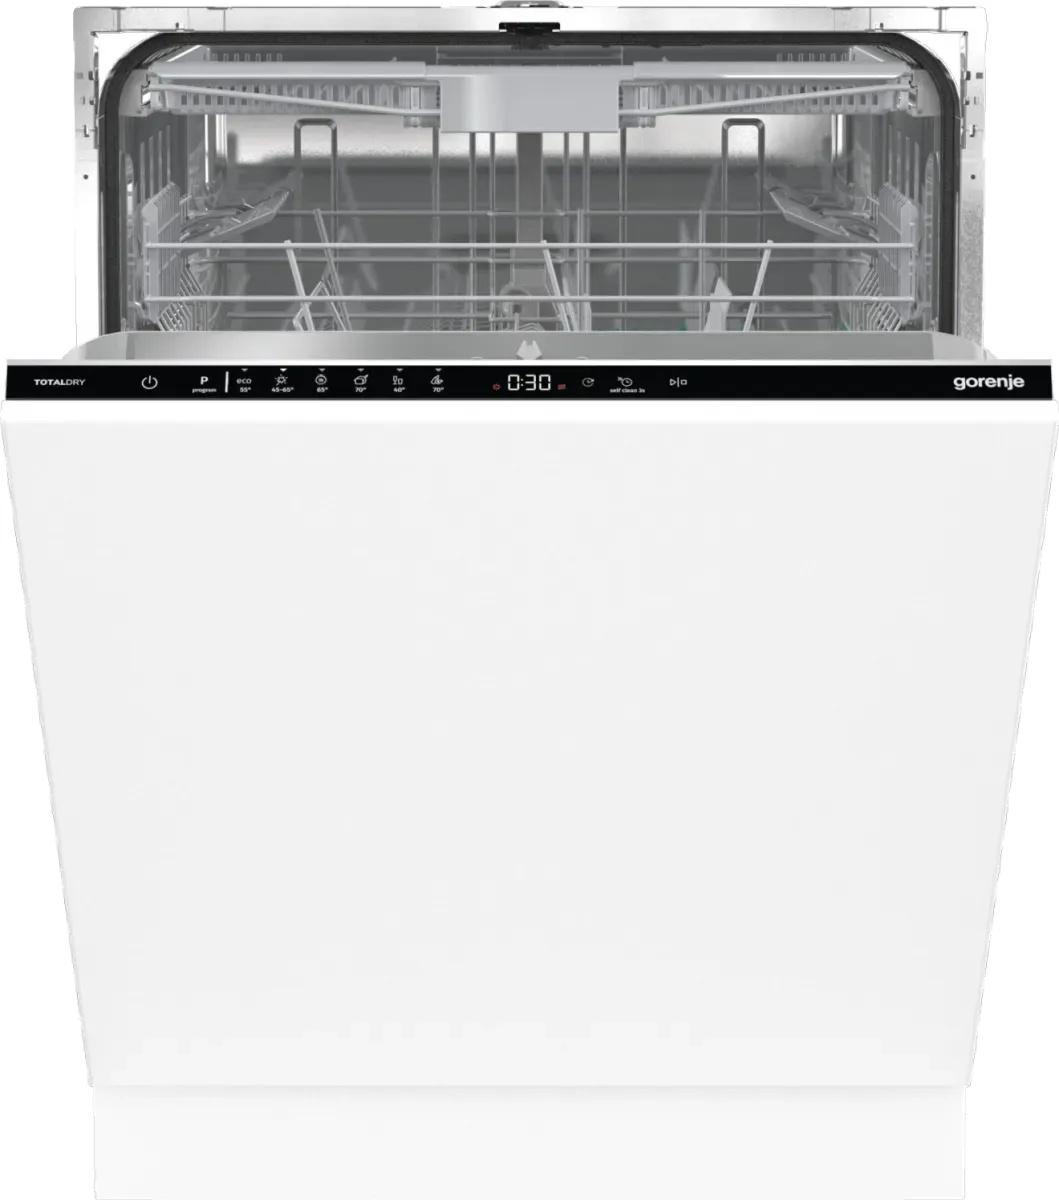 Selected image for GORENJE GV 643D90 Ugradna mašina za pranje sudova, 16 kompleta, 6 programa, Bela